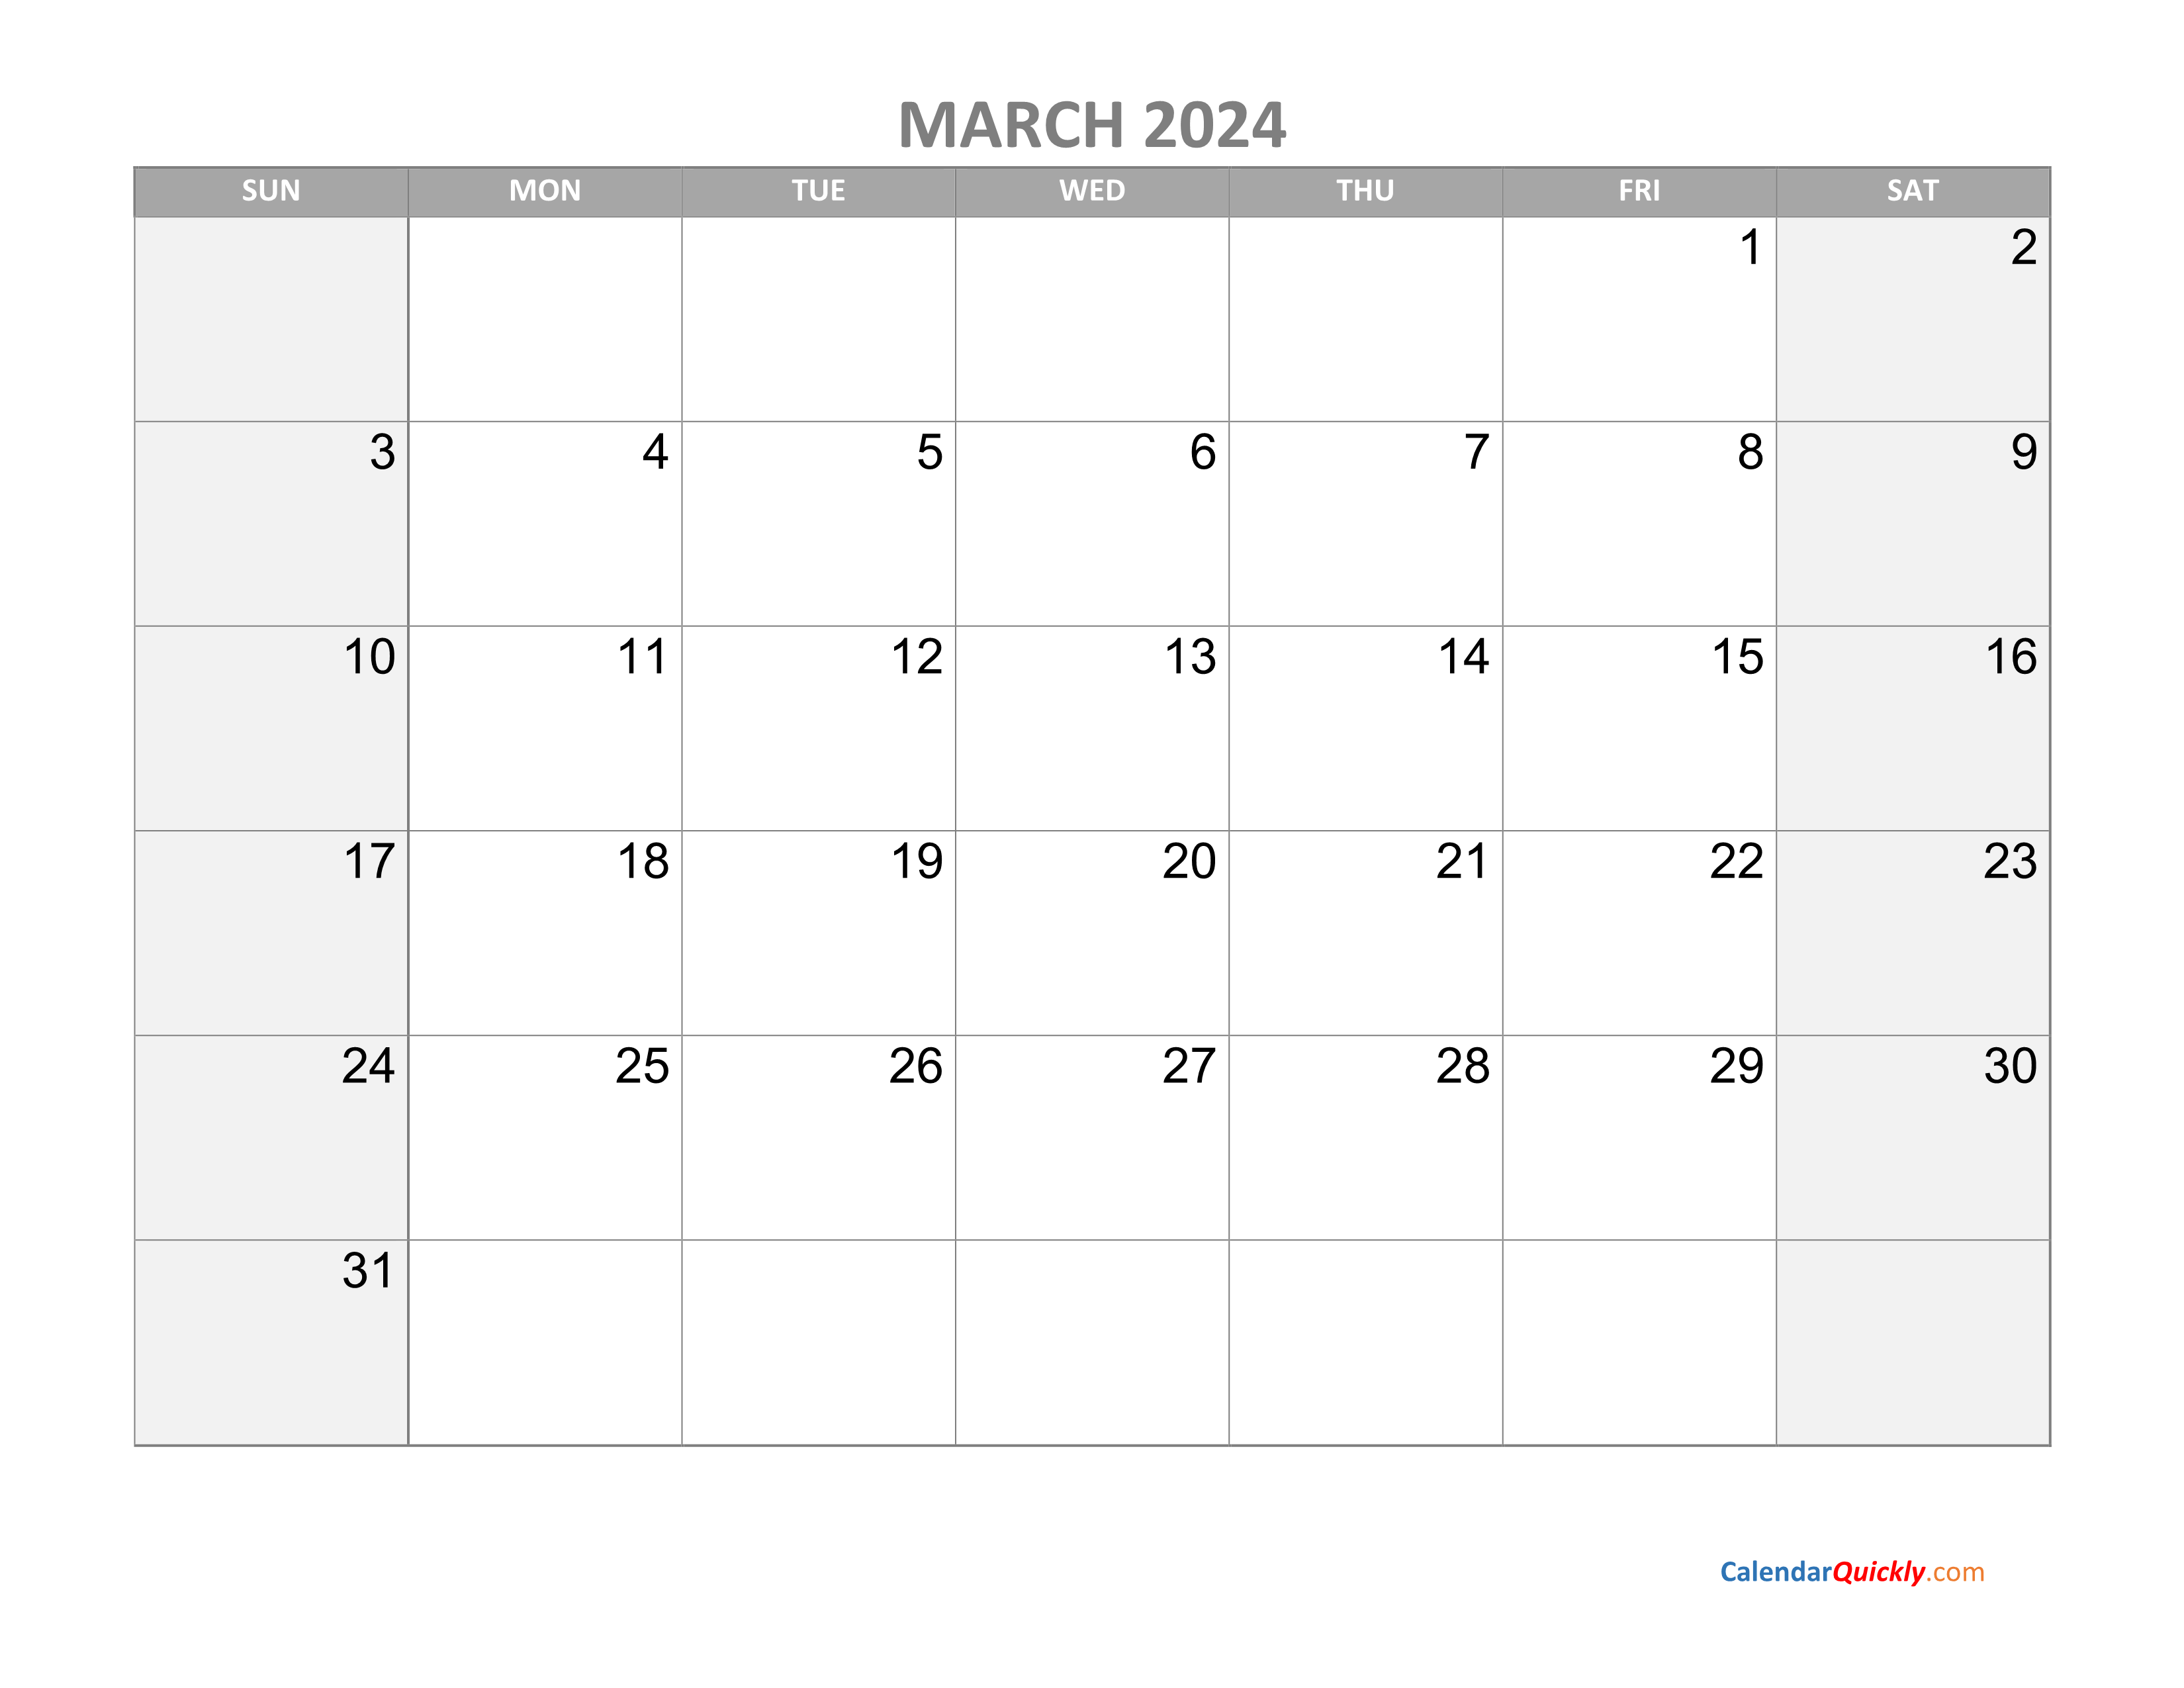 Календарь операций на март 2024 года. Календарь март 2024. Январь февраль март 2024. Календарьмарнт 2024. Mart kalendari 2024.